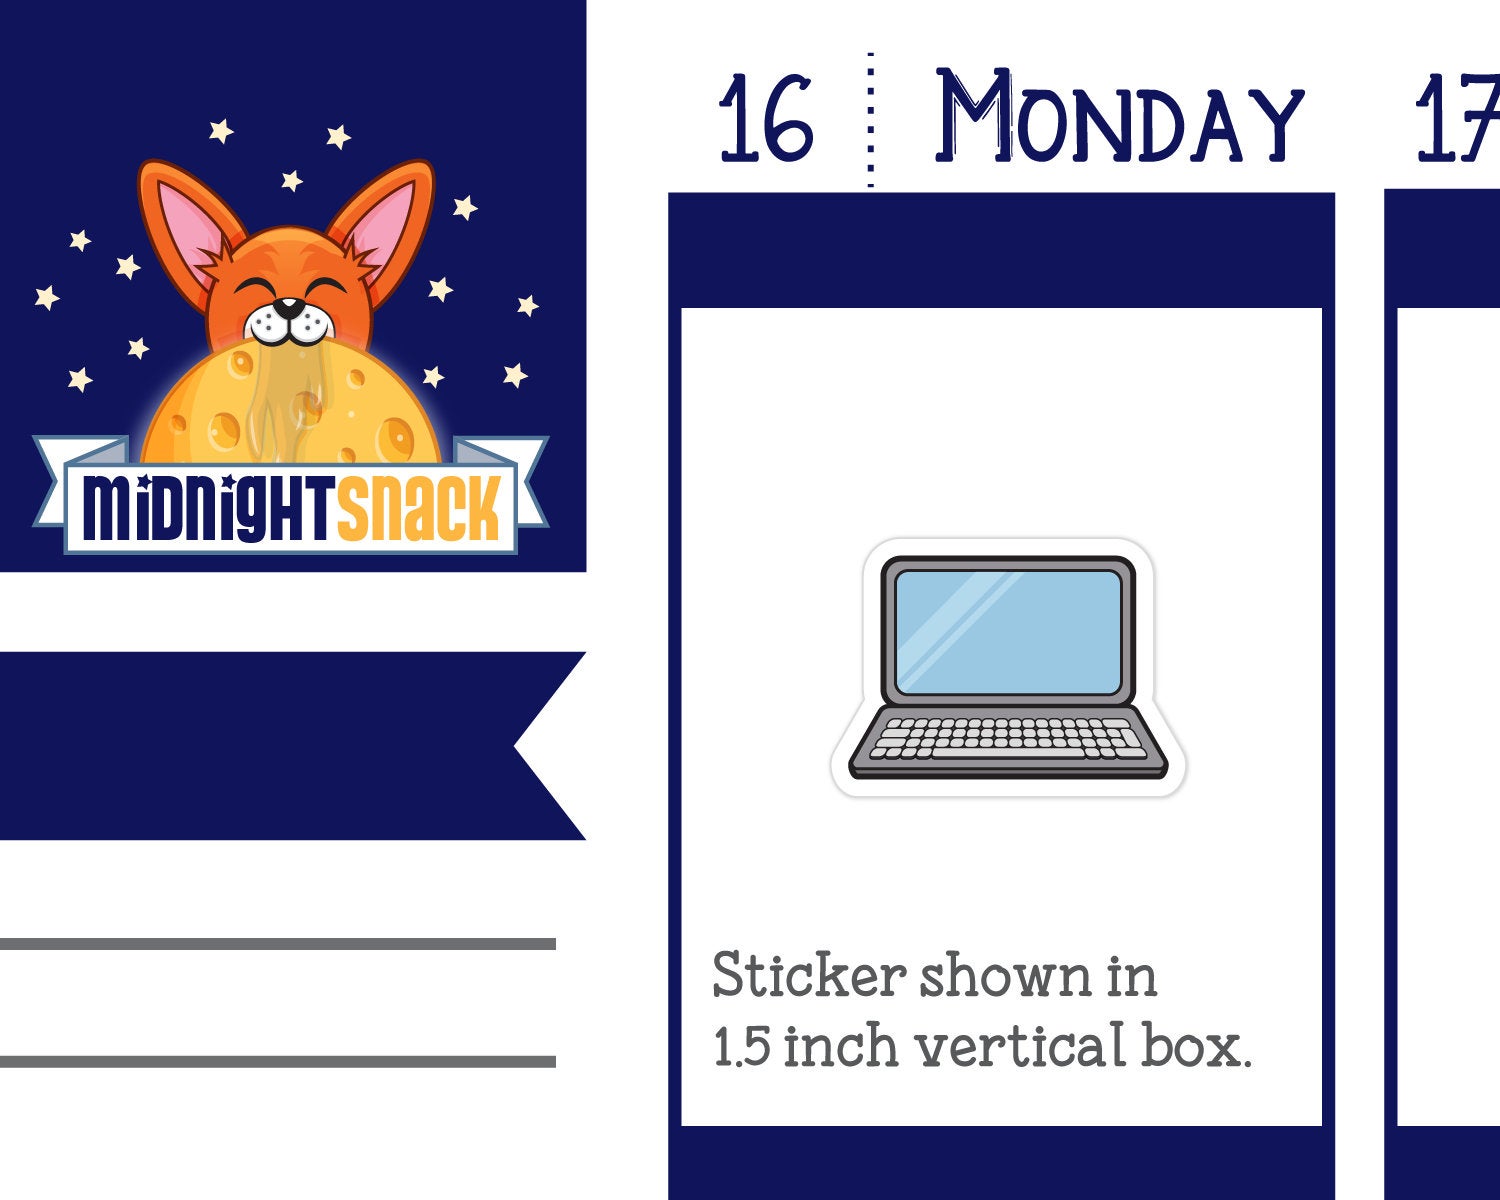 Laptop Computer Icon: Online Planner Sticker Midnight Snack Planner